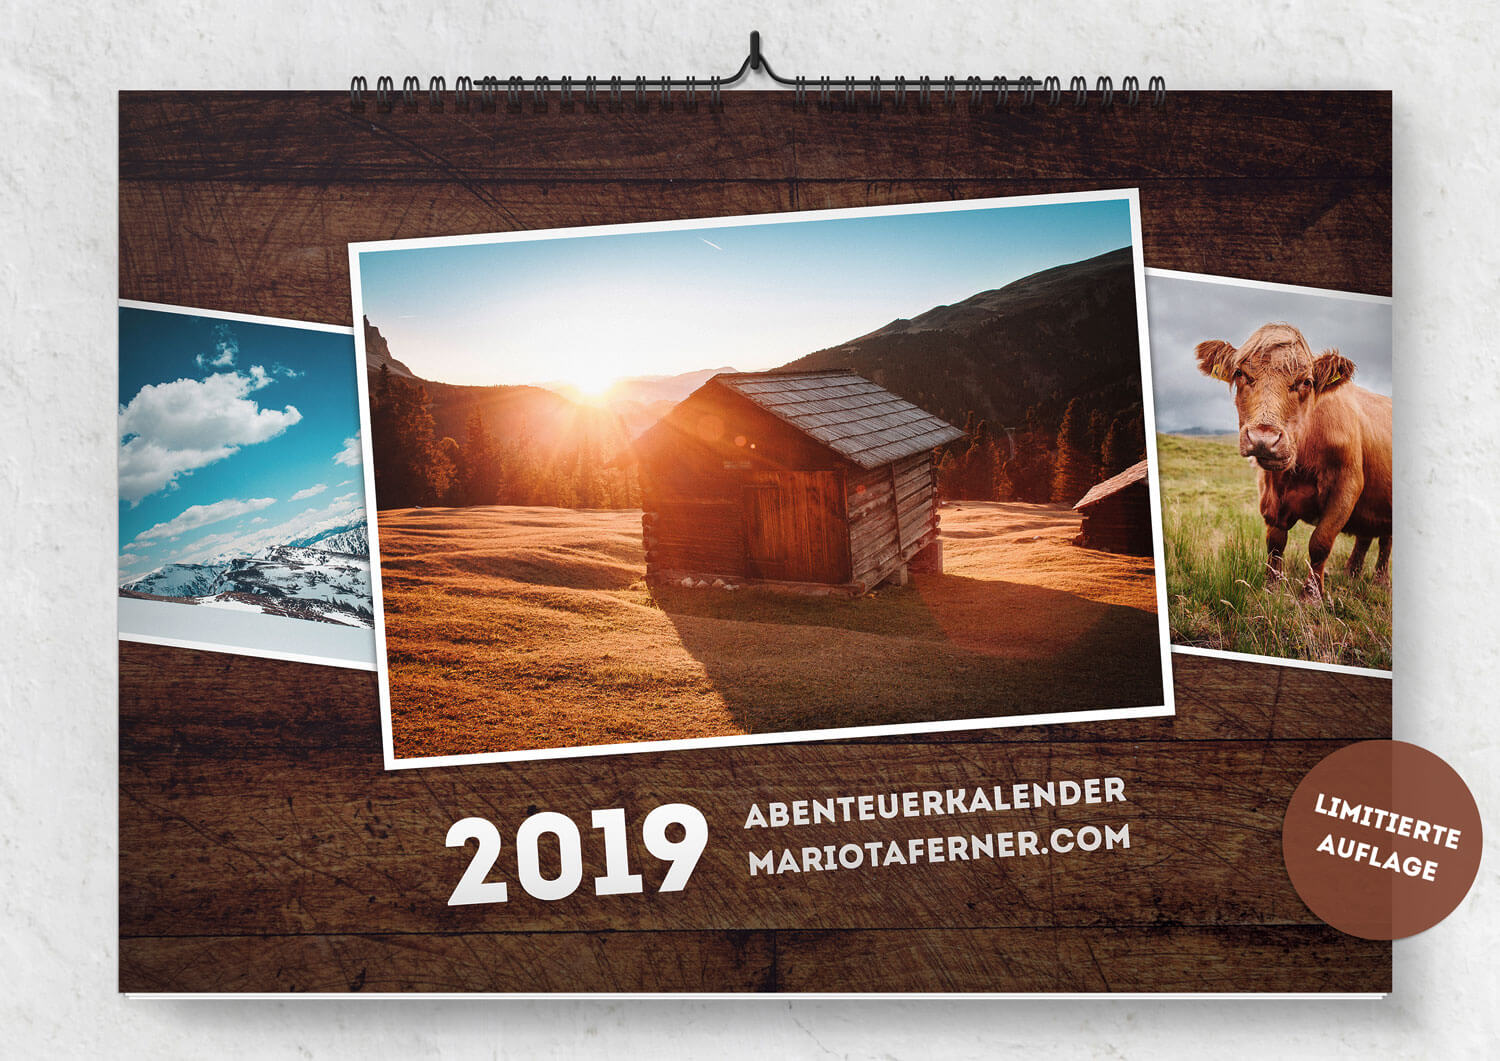 Abenteuerkalender 2019 – Mario Taferner